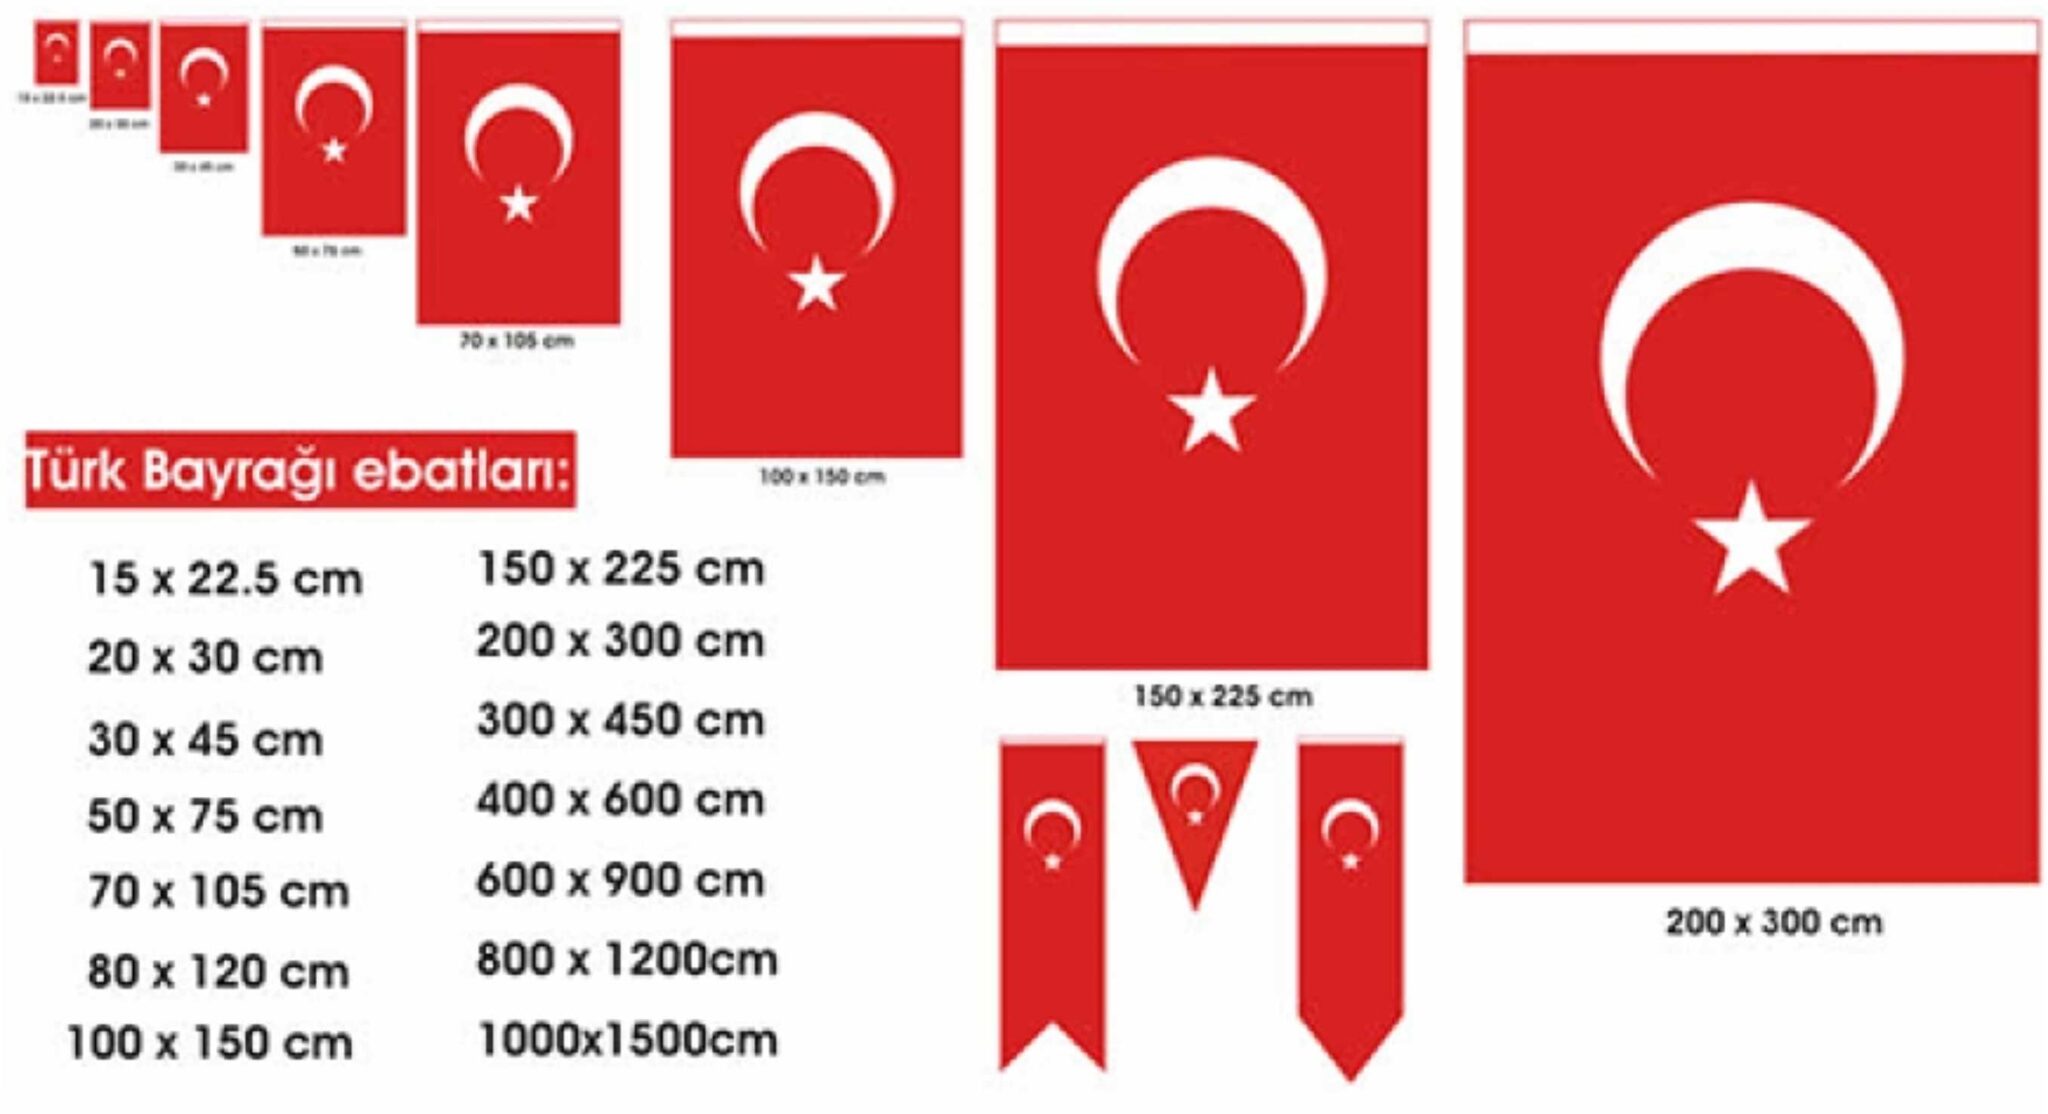 Türk Bayrağı Ölçüleri ve Fiyatları - Plan Bayrak